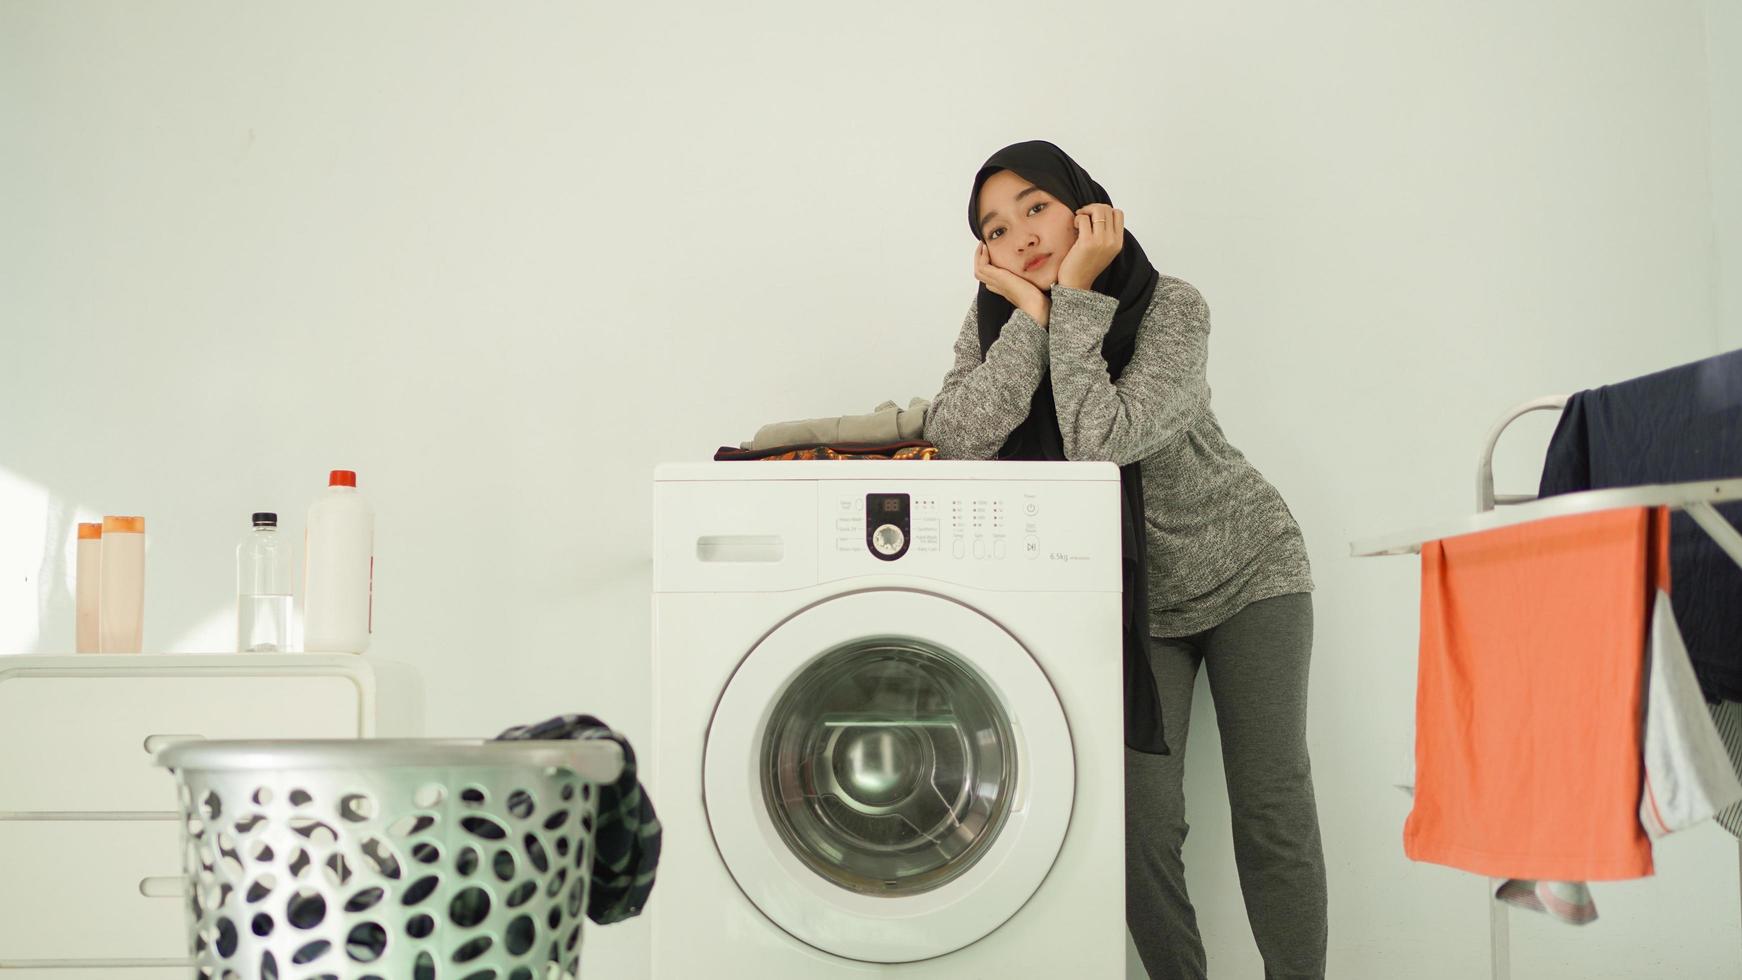 donna asiatica in hijab in attesa che la lavatrice giri a casa foto